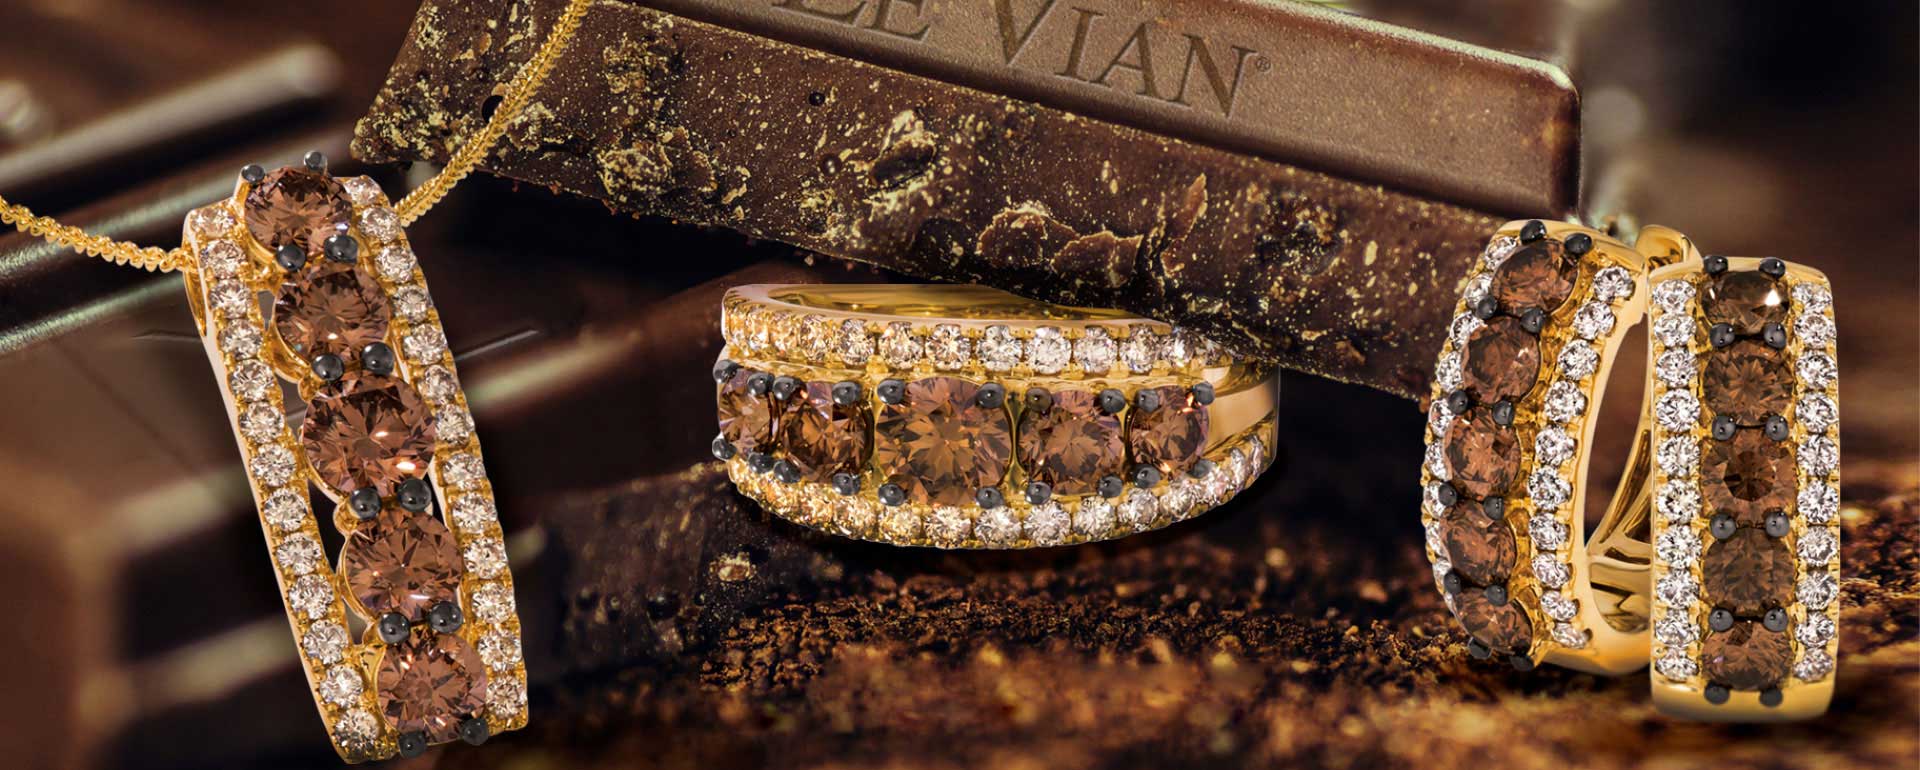 Le Vian Jewelry Lover S Dream Come True